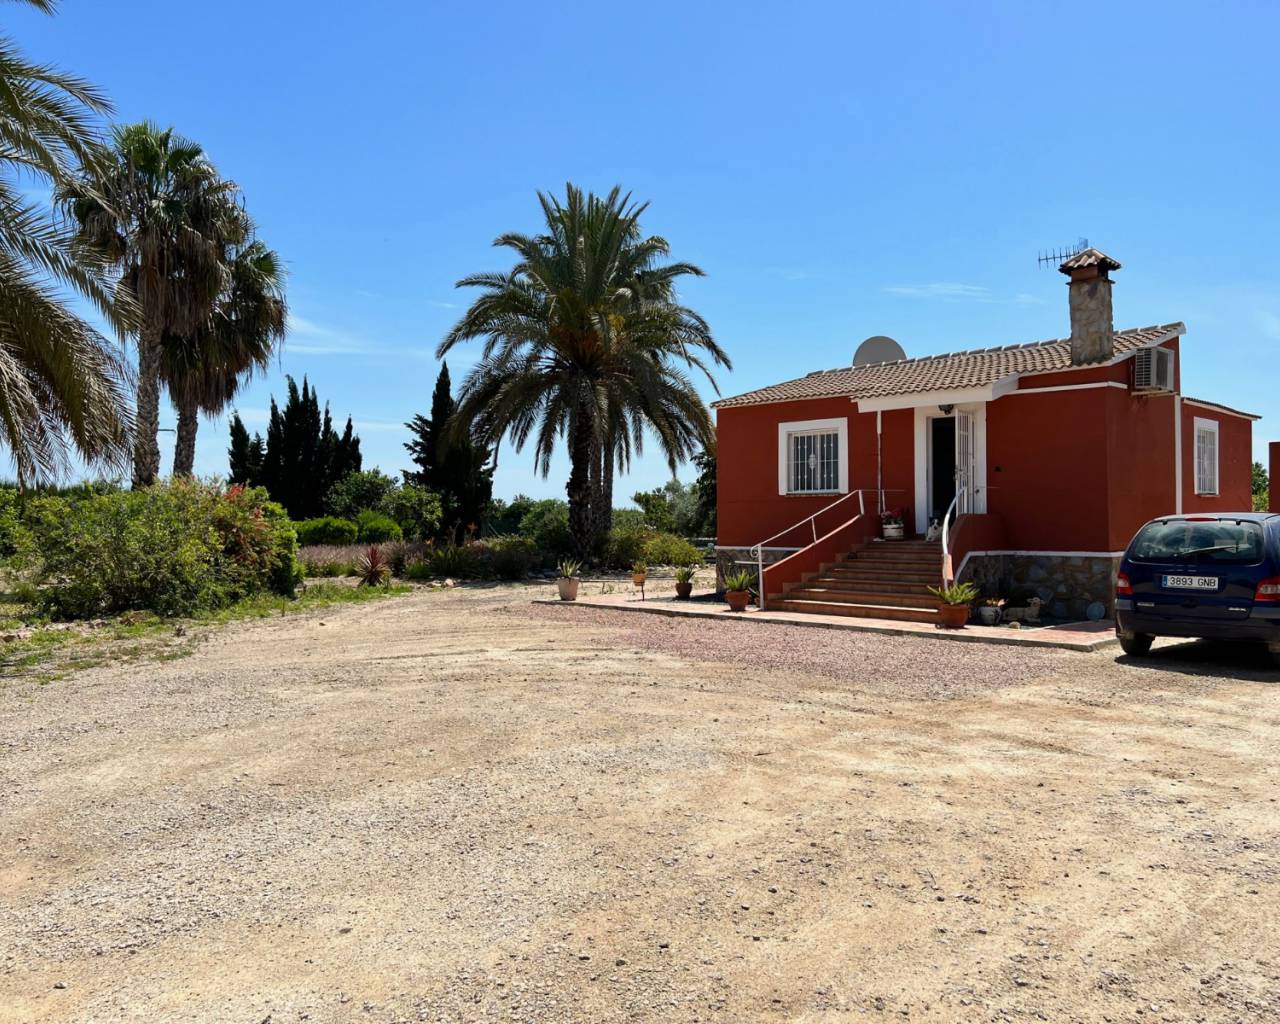 Finca - Country Property - Wederverkoop - San Miguel de Salinas - San Miguel de Salinas